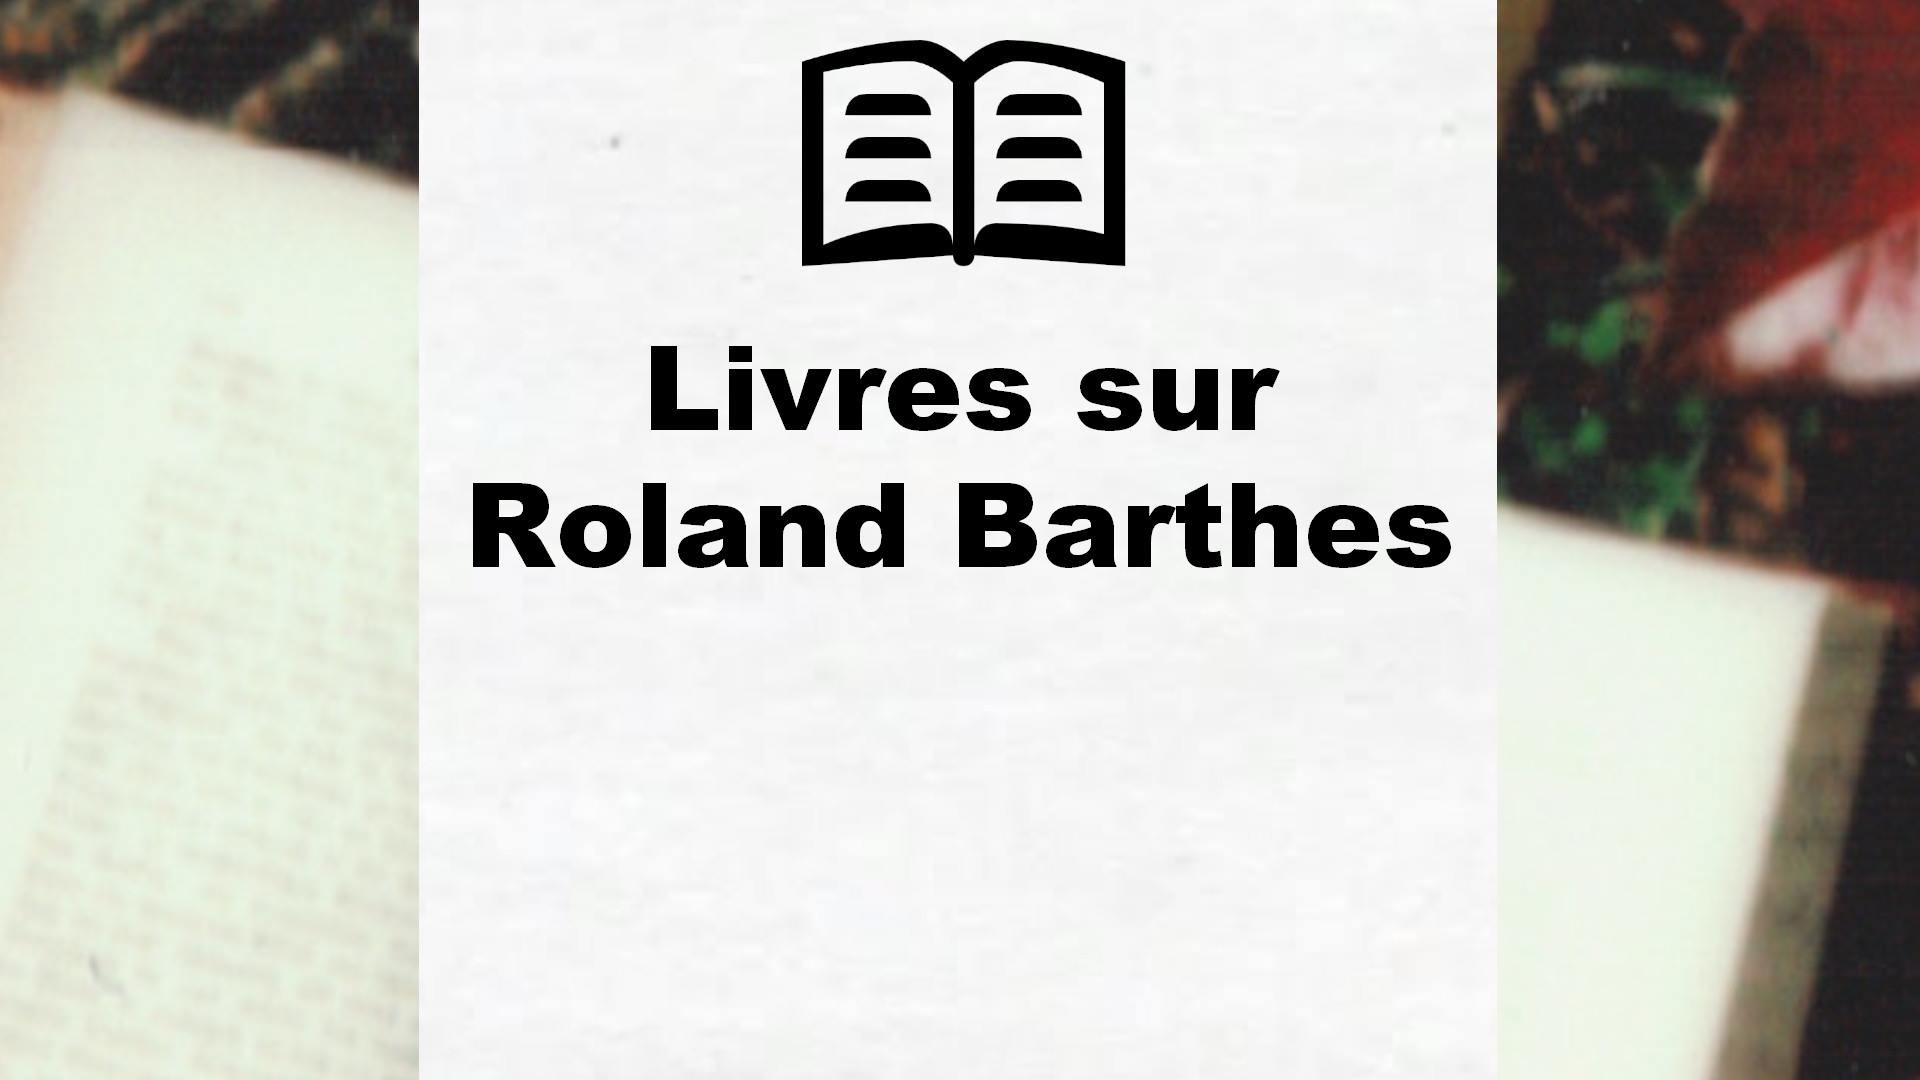 Livres sur Roland Barthes